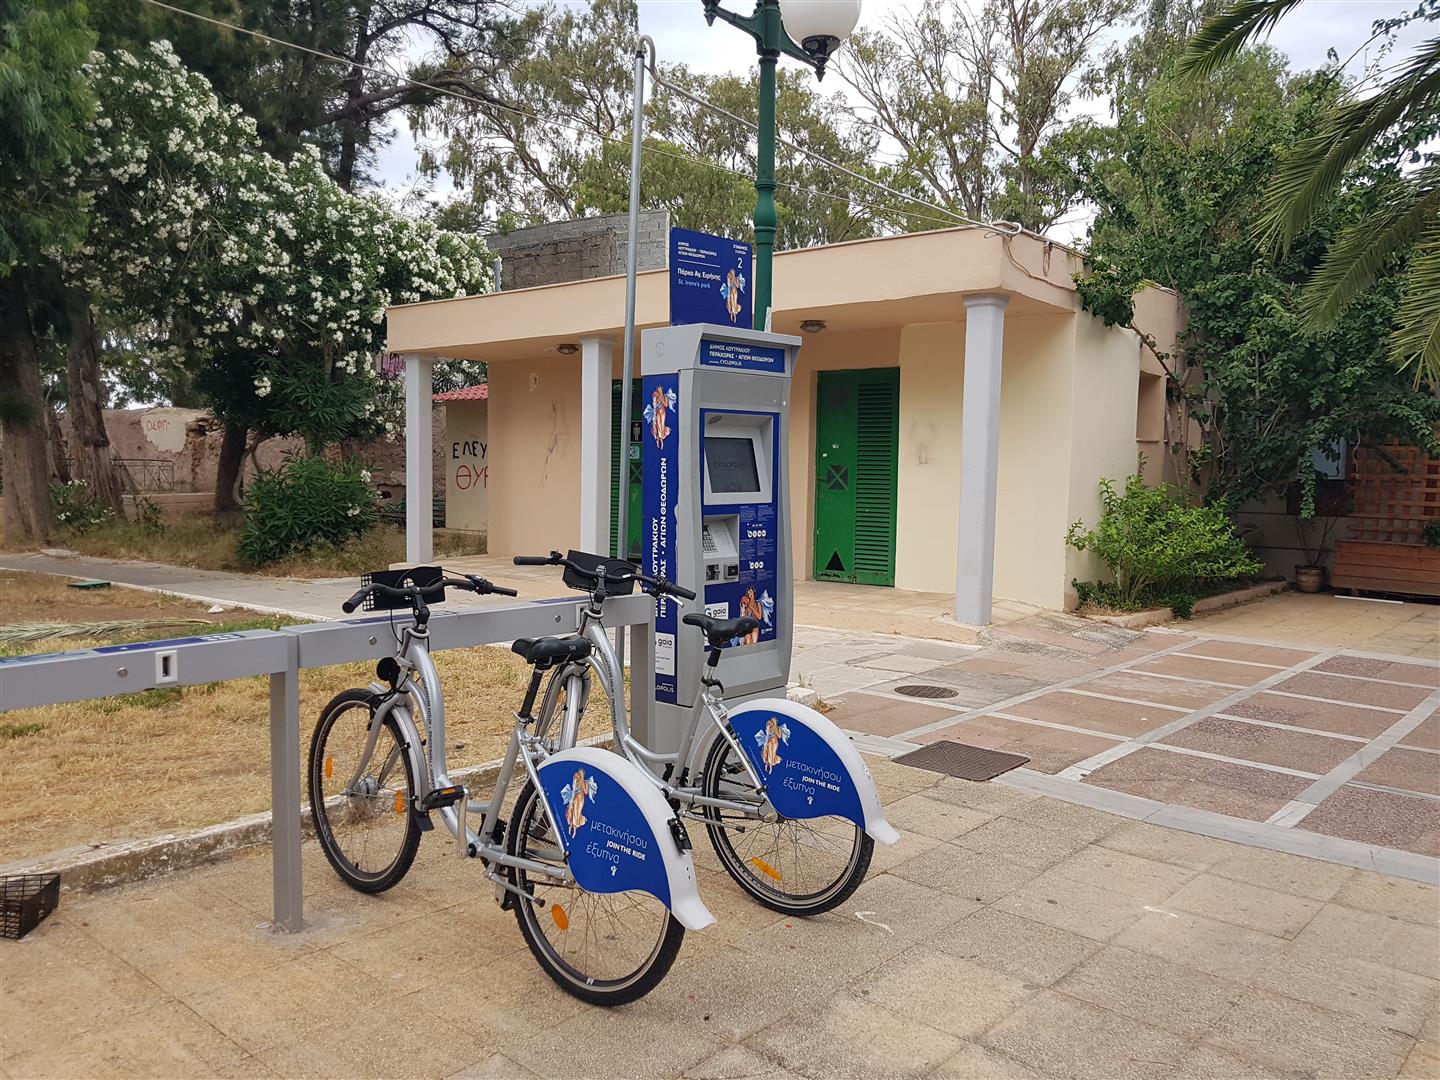 ο Δήμος Λουτρακίου έχει σύστημα ενοικίασης ποδηλάτων που λειτουργεί